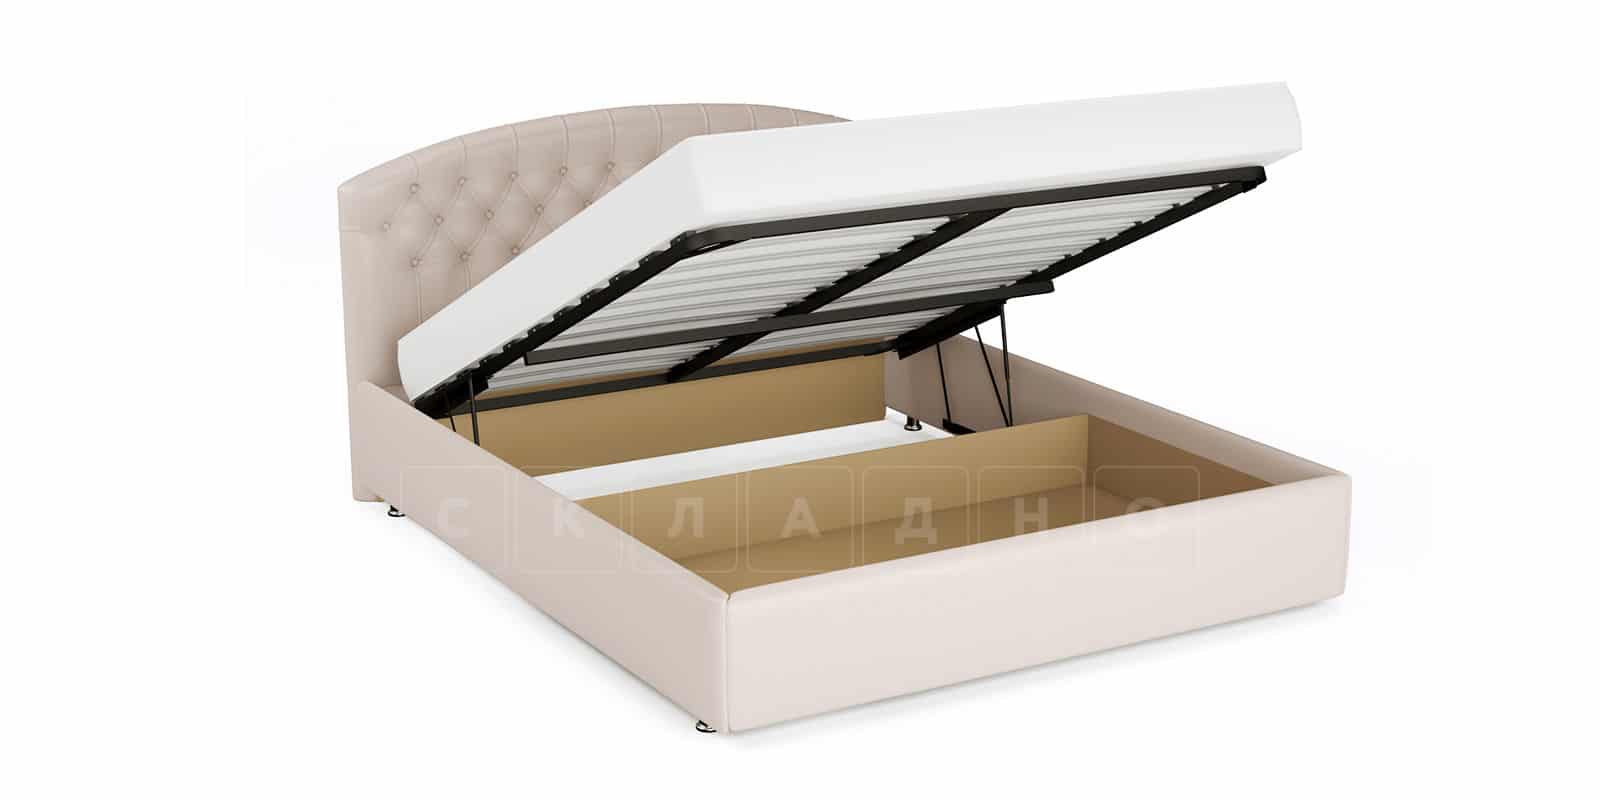 Мягкая кровать Малибу 160 см экокожа бежевого цвета вариант 1 фото 9 | интернет-магазин Складно